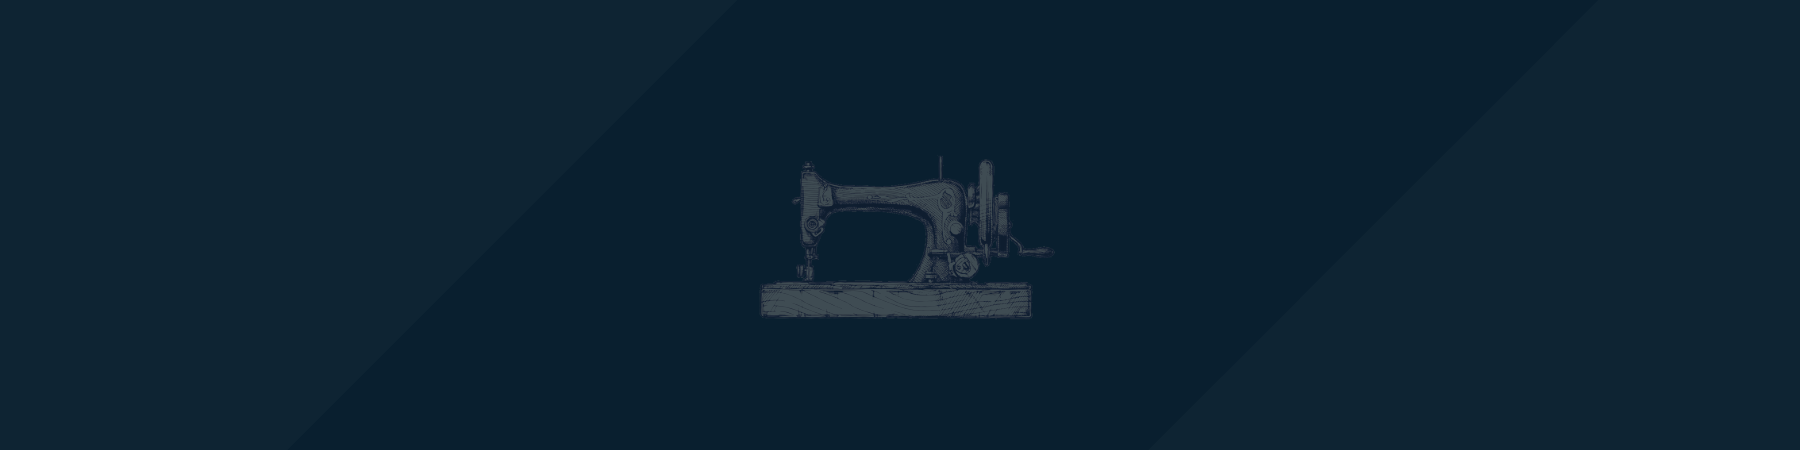 hand drawn antique sewing machine on dark blue background